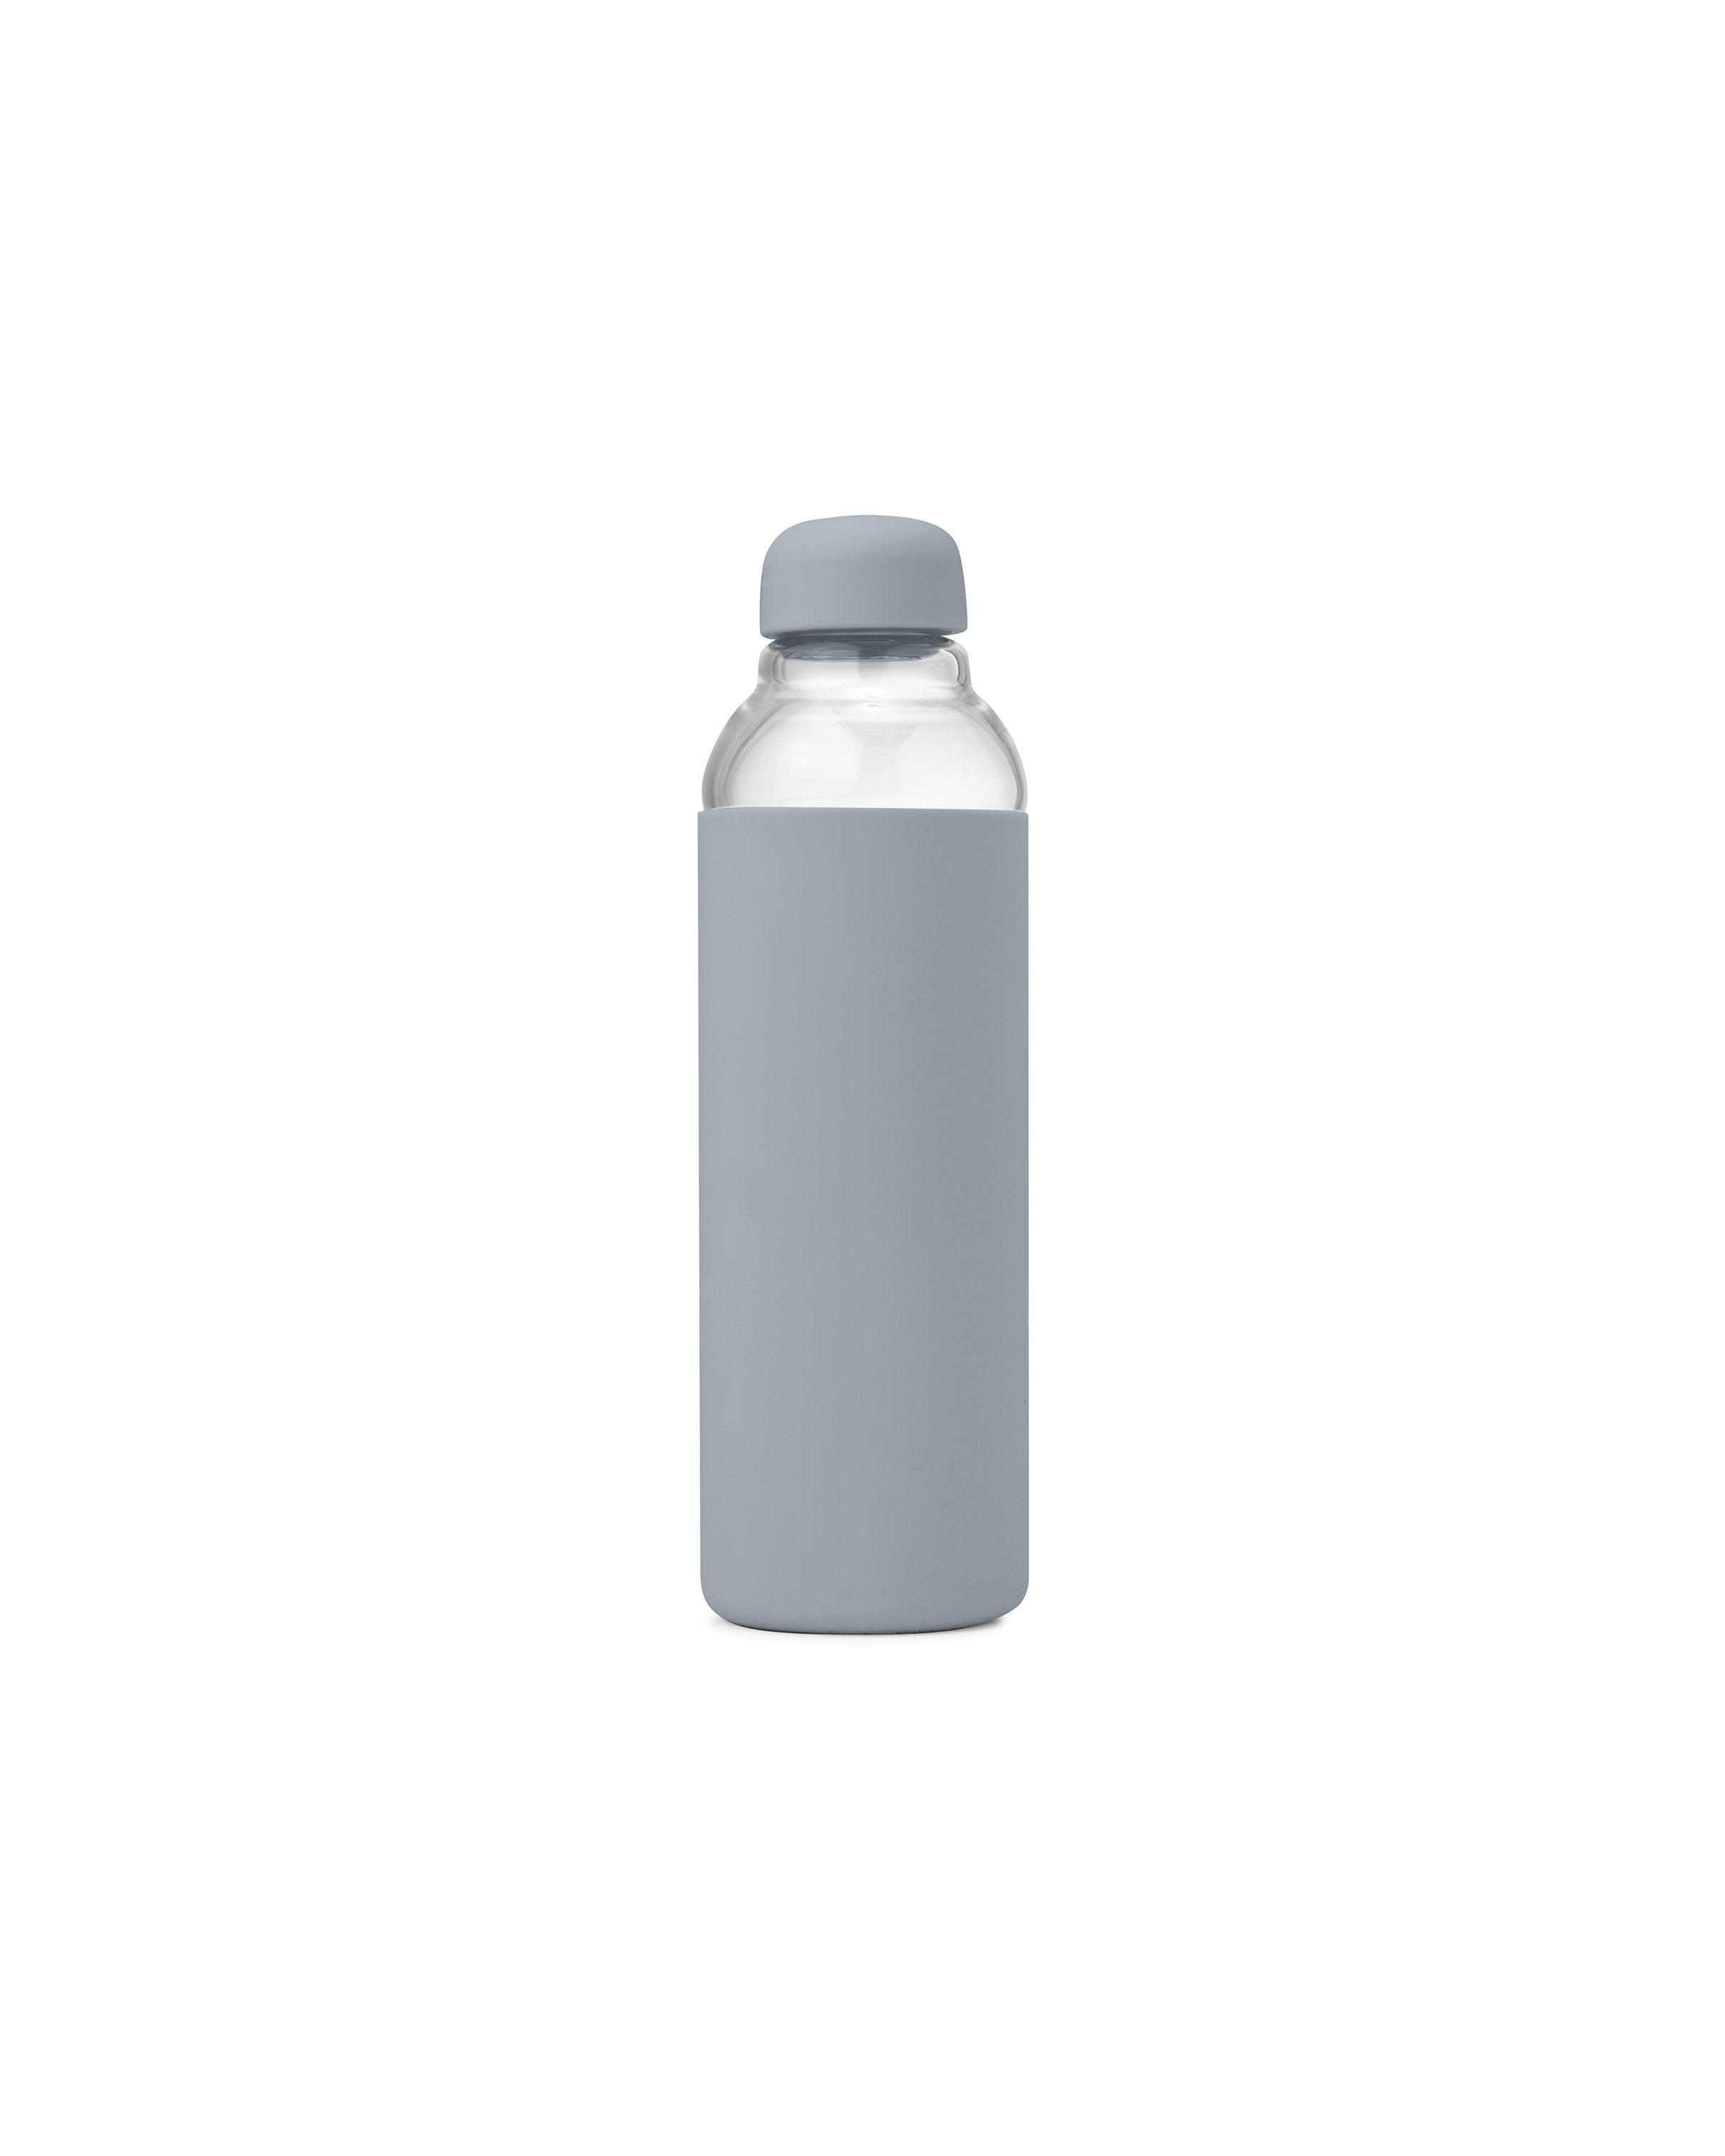 Porter Water Bottle - Mint - W&P